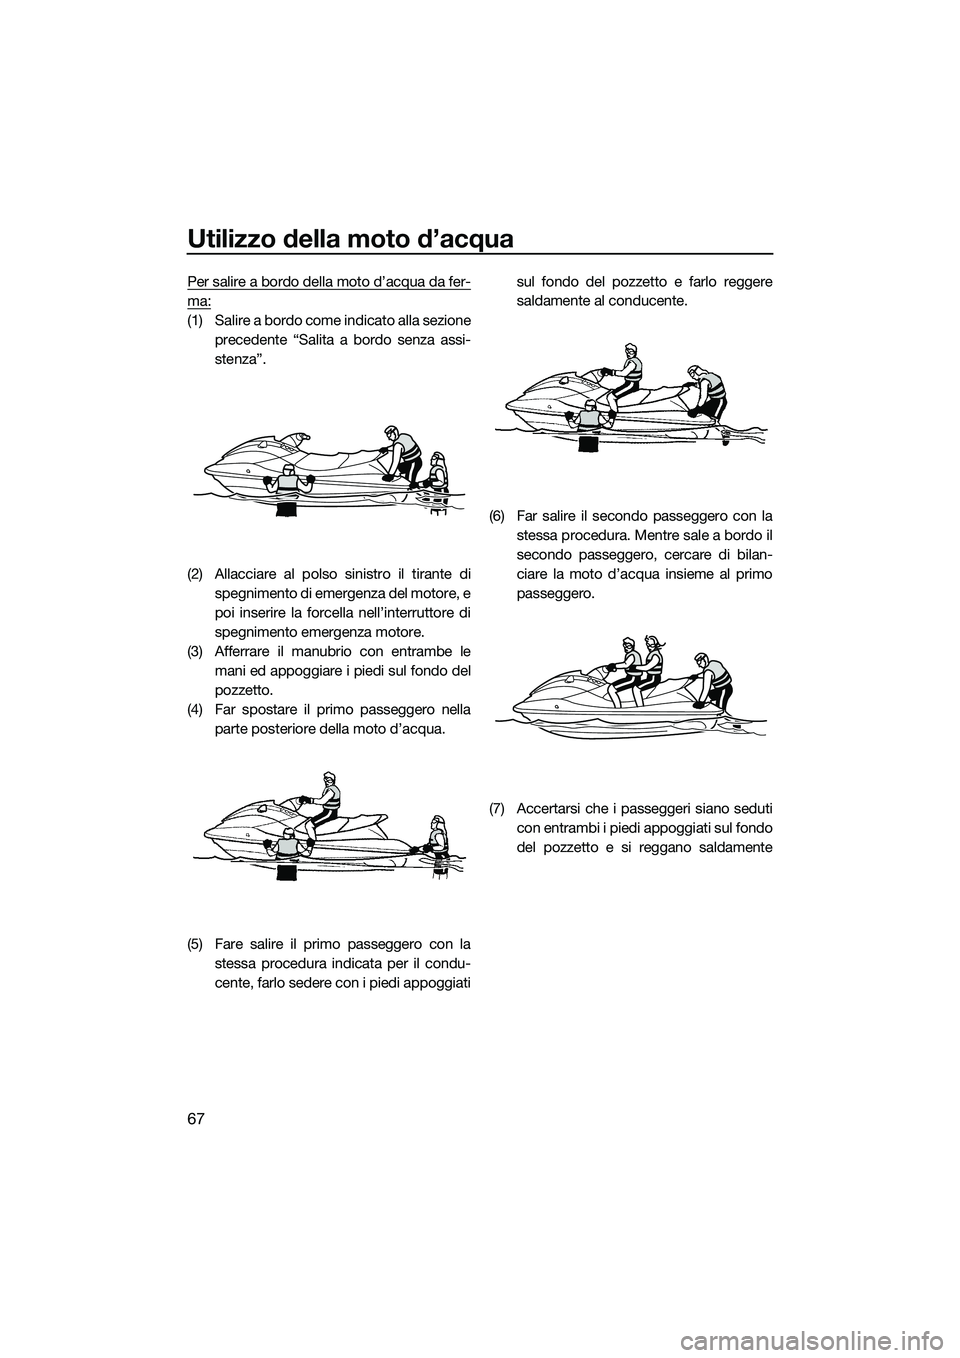 YAMAHA V1 SPORT 2015  Manuale duso (in Italian) Utilizzo della moto d’acqua
67
Per salire a bordo della moto d’acqua da fer-
ma:
(1) Salire a bordo come indicato alla sezioneprecedente “Salita a bordo senza assi-
stenza”.
(2) Allacciare al 